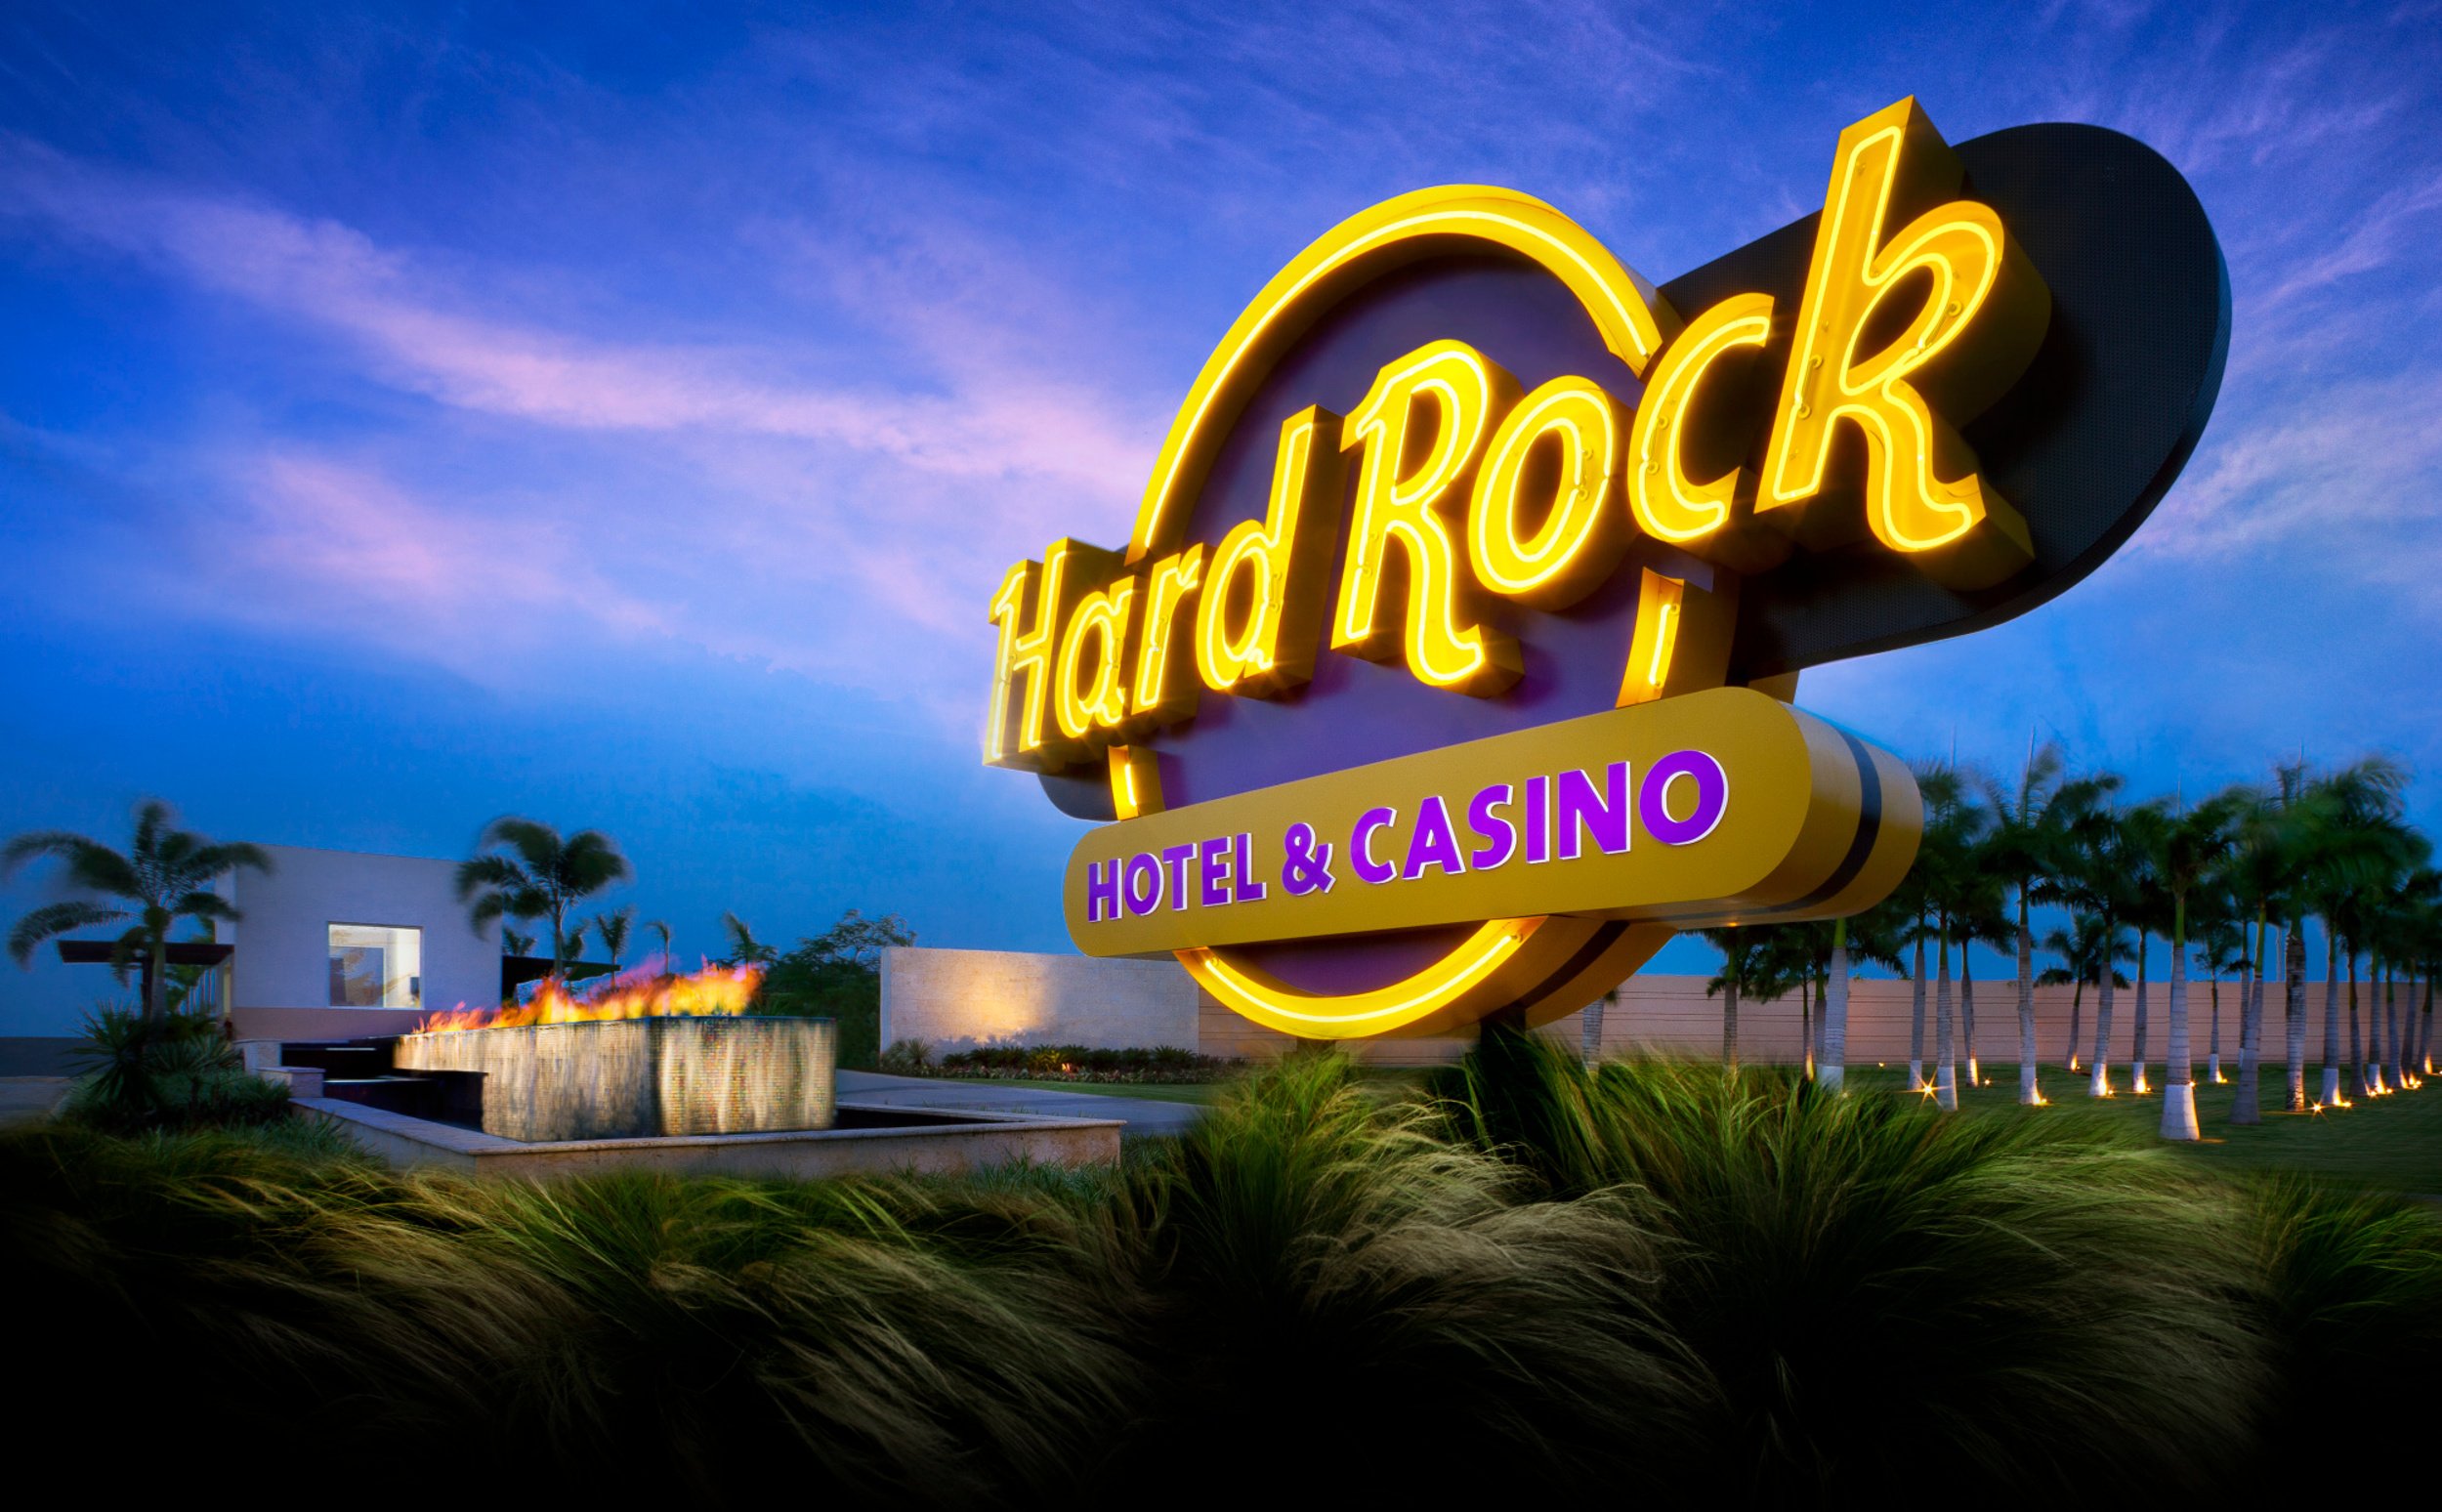 Antifrau traslada Hard Rock a la Sindicatura de Comptes por si ve "irregularidades"